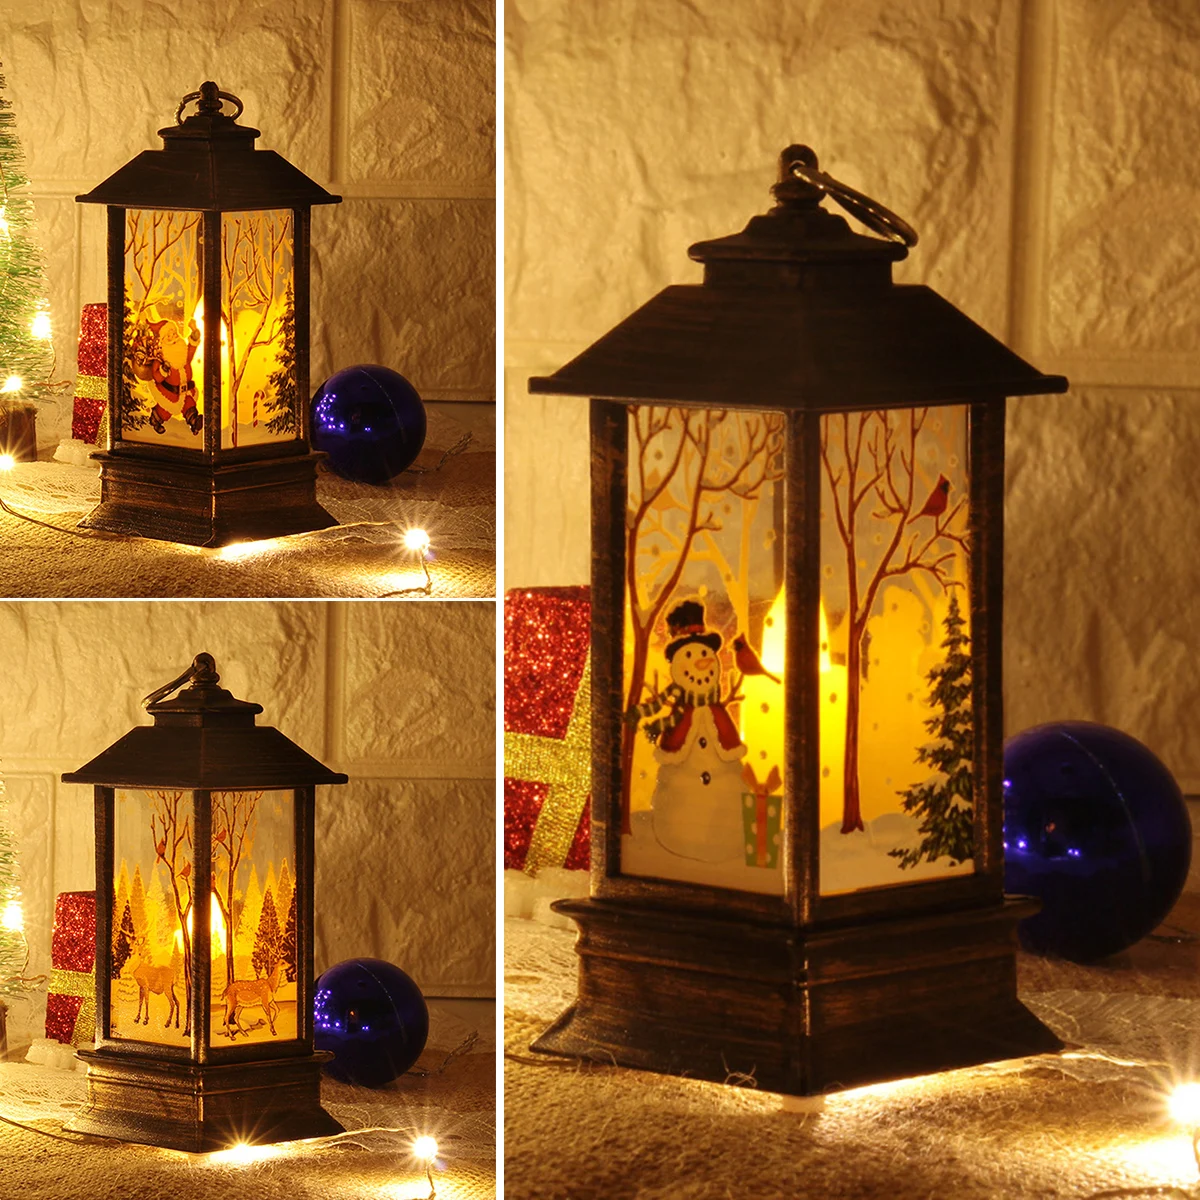 

Рождественский фонарь, украшение в виде Санта-Клауса, снеговика, лося, подсвечник, рождественские украшения, новогодний подарок, фотография, свеча